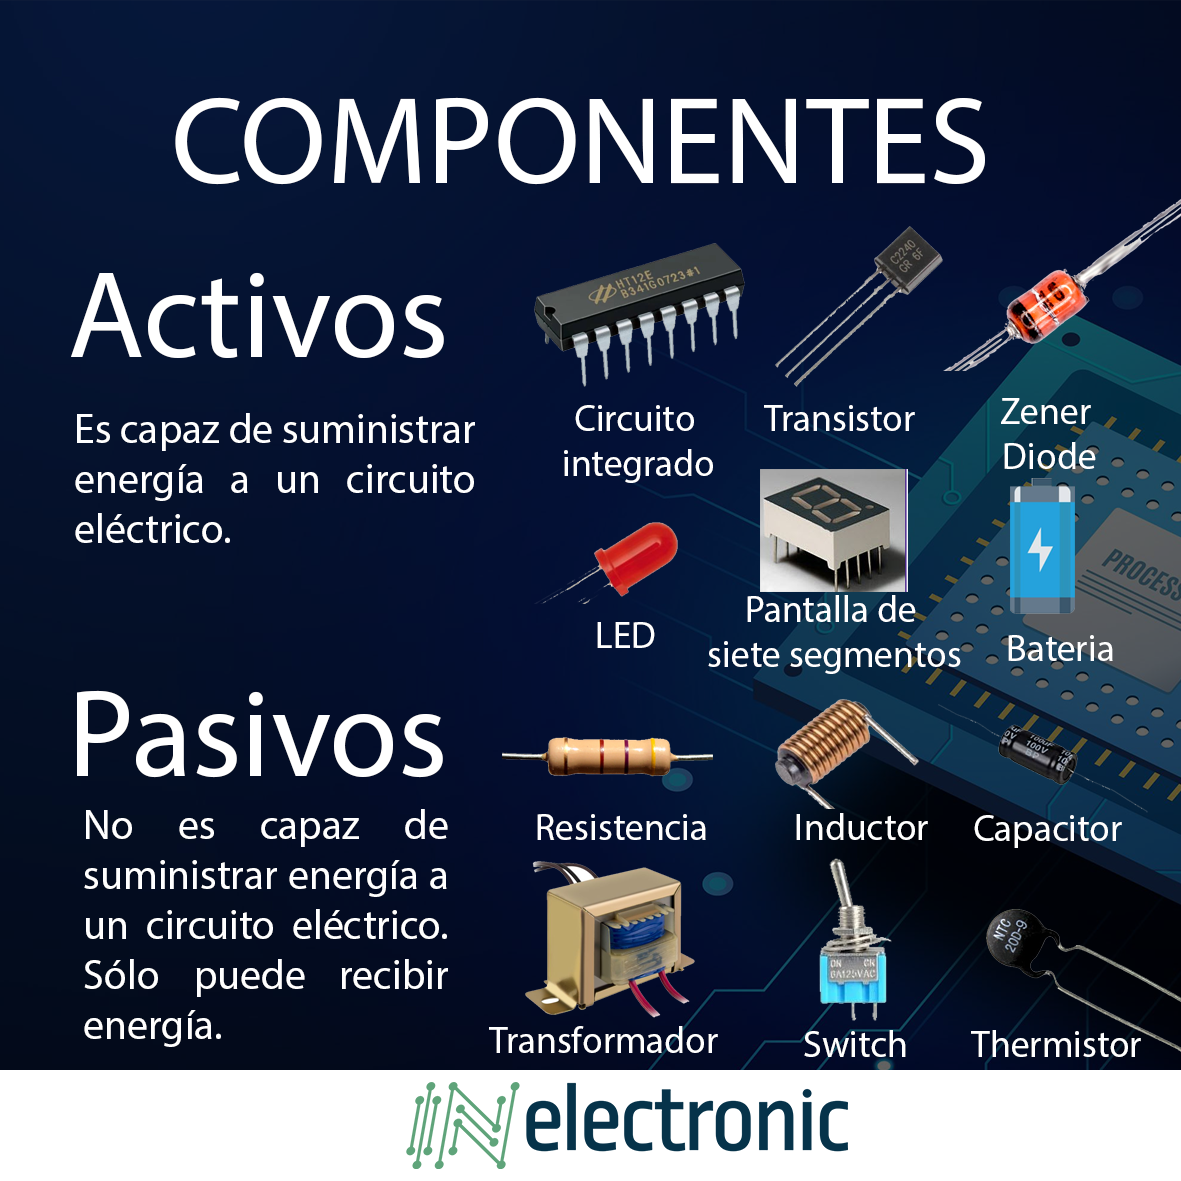 Componentes electrónicos